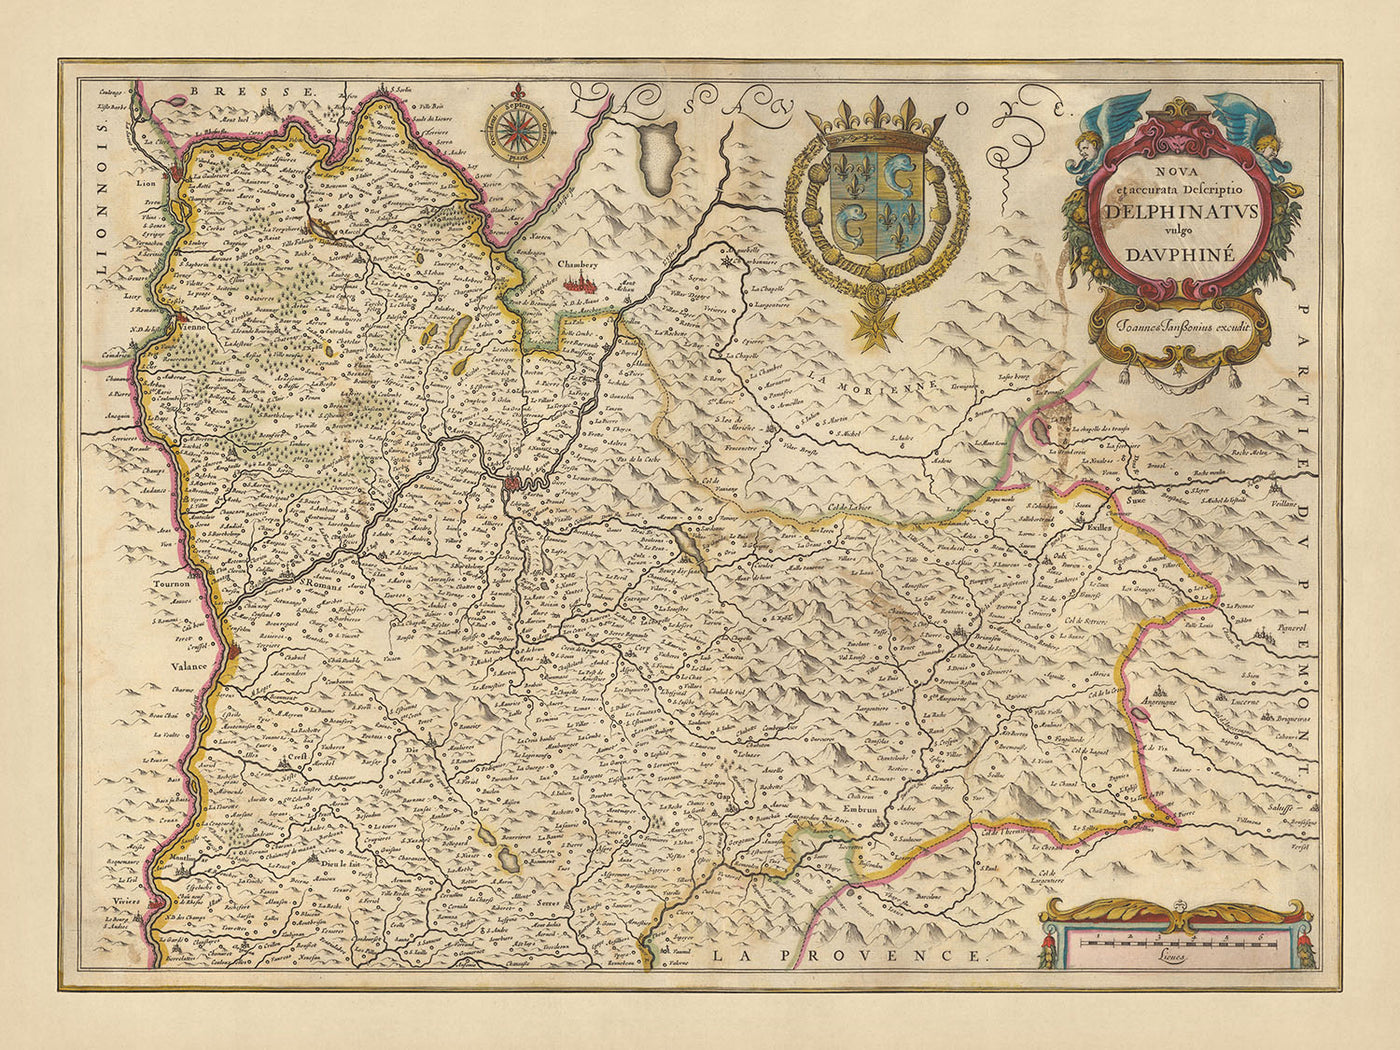 Carte ancienne de la Province du Dauphiné par Visscher, 1690 : Chambéry, Grenoble, Lyon, Valence, Parc National de la Vanoise